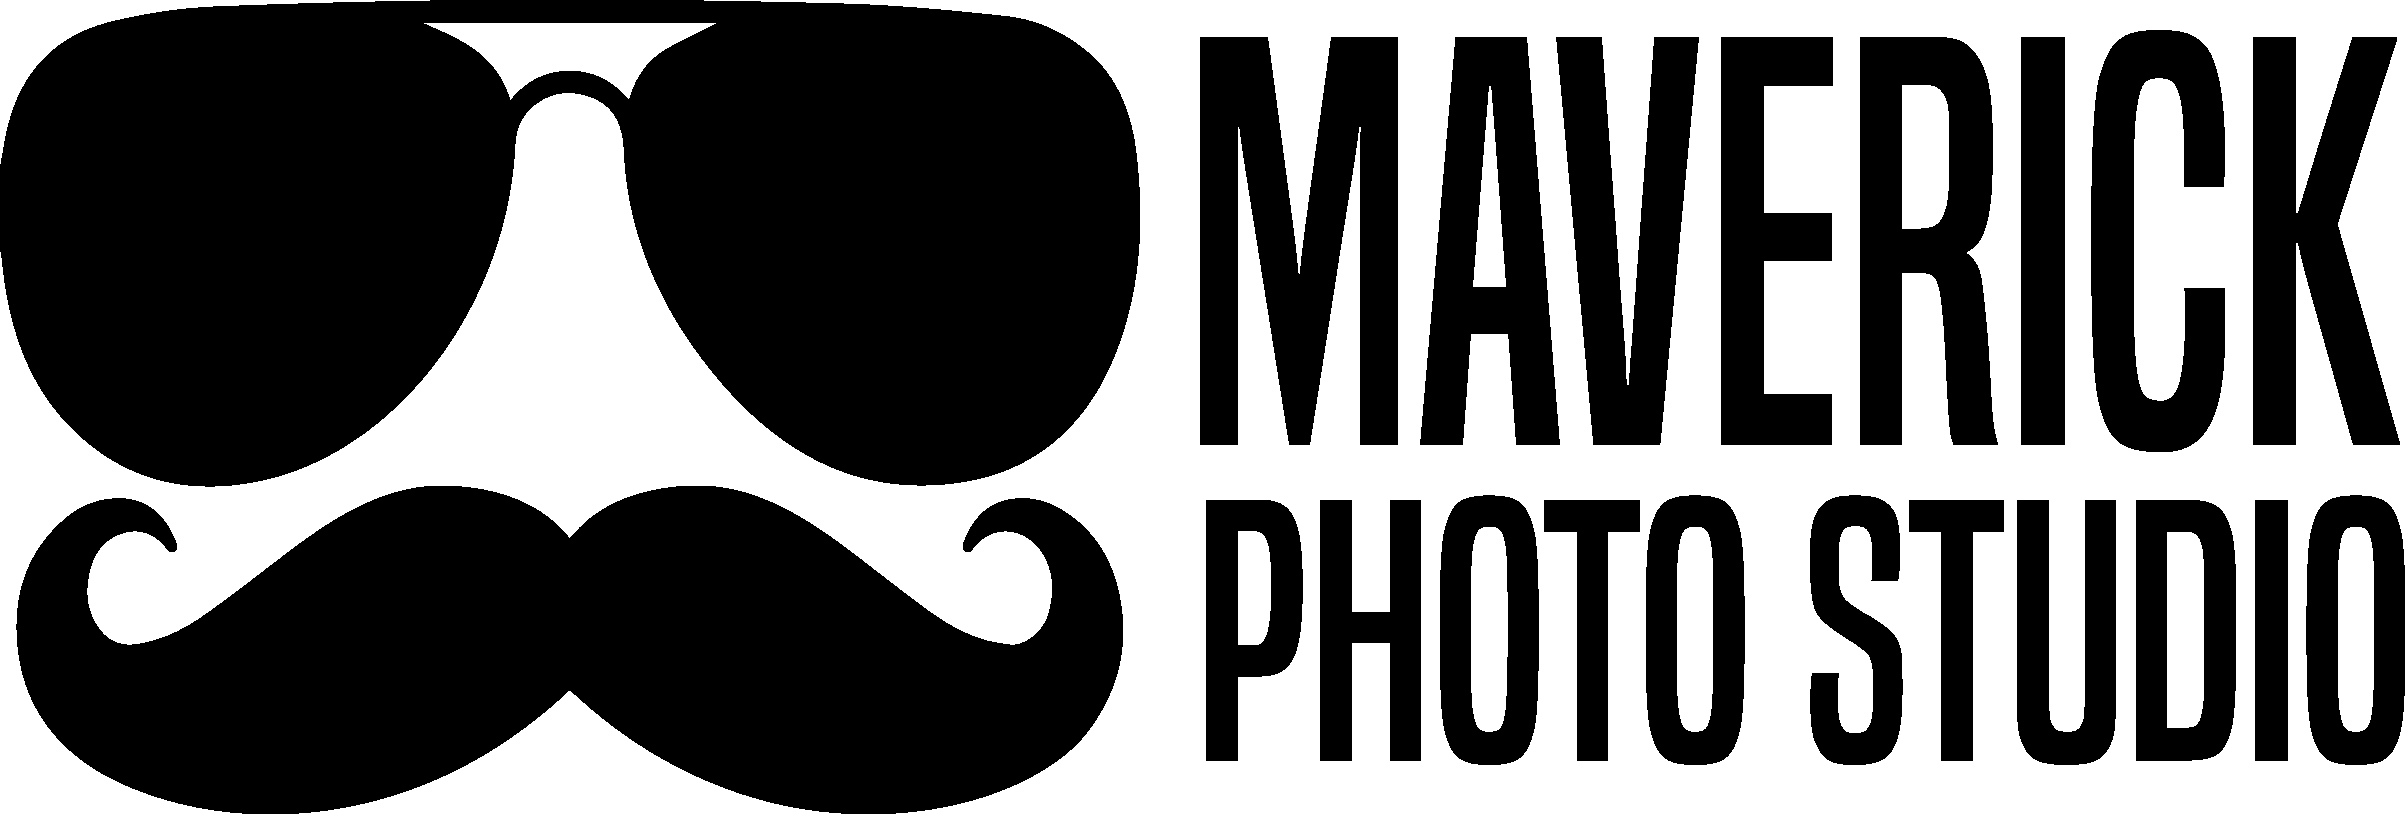 Maverick Photo Studio